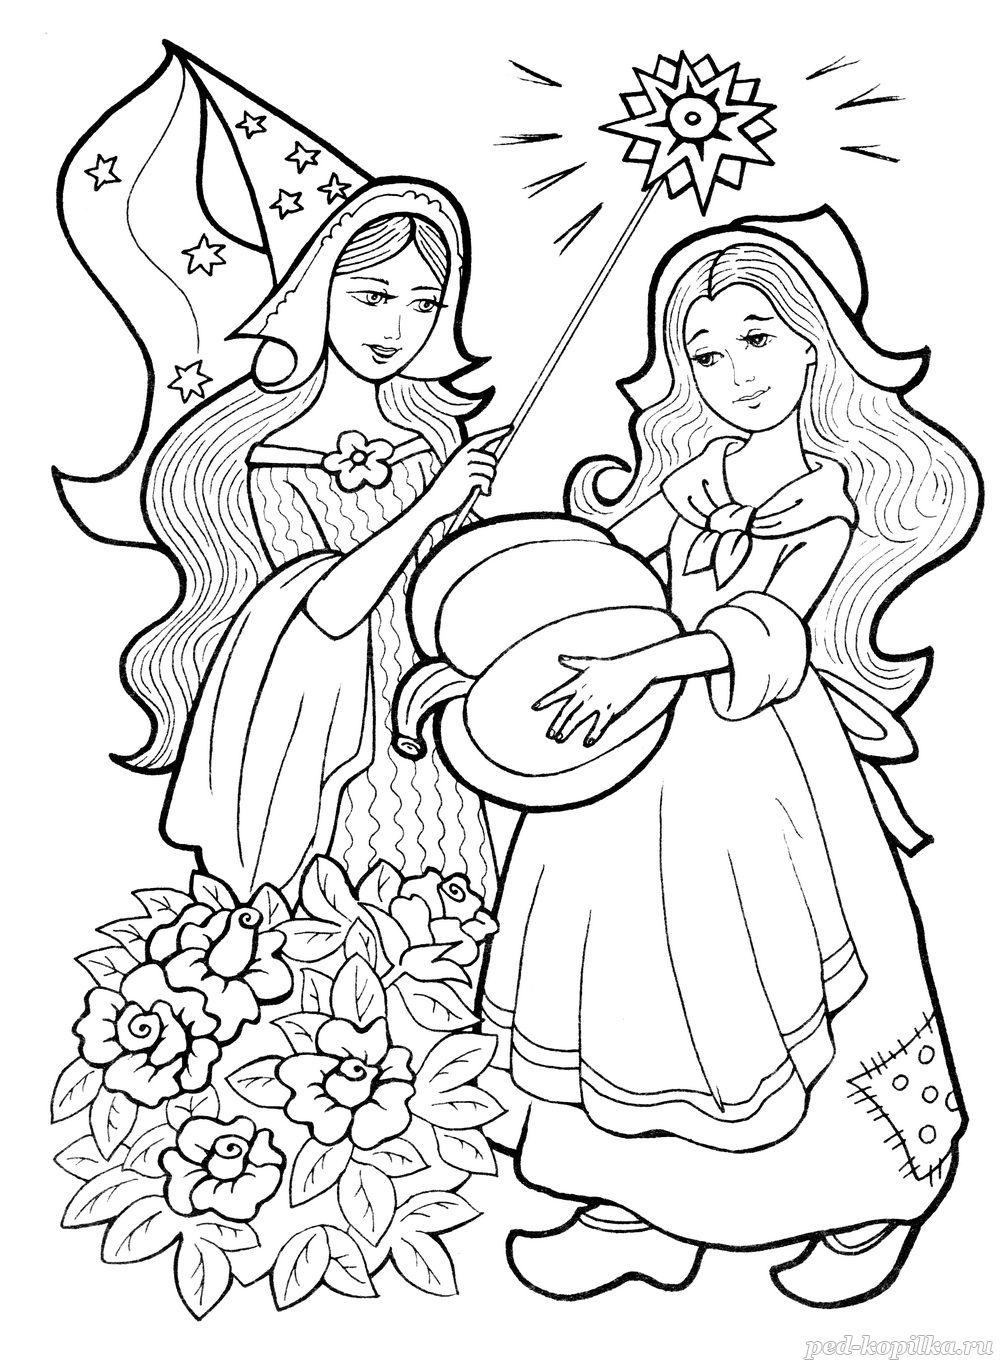 Розмальовки попелюшка Попелюшка і чарівниця з гарбузом в руці чарівна паличка